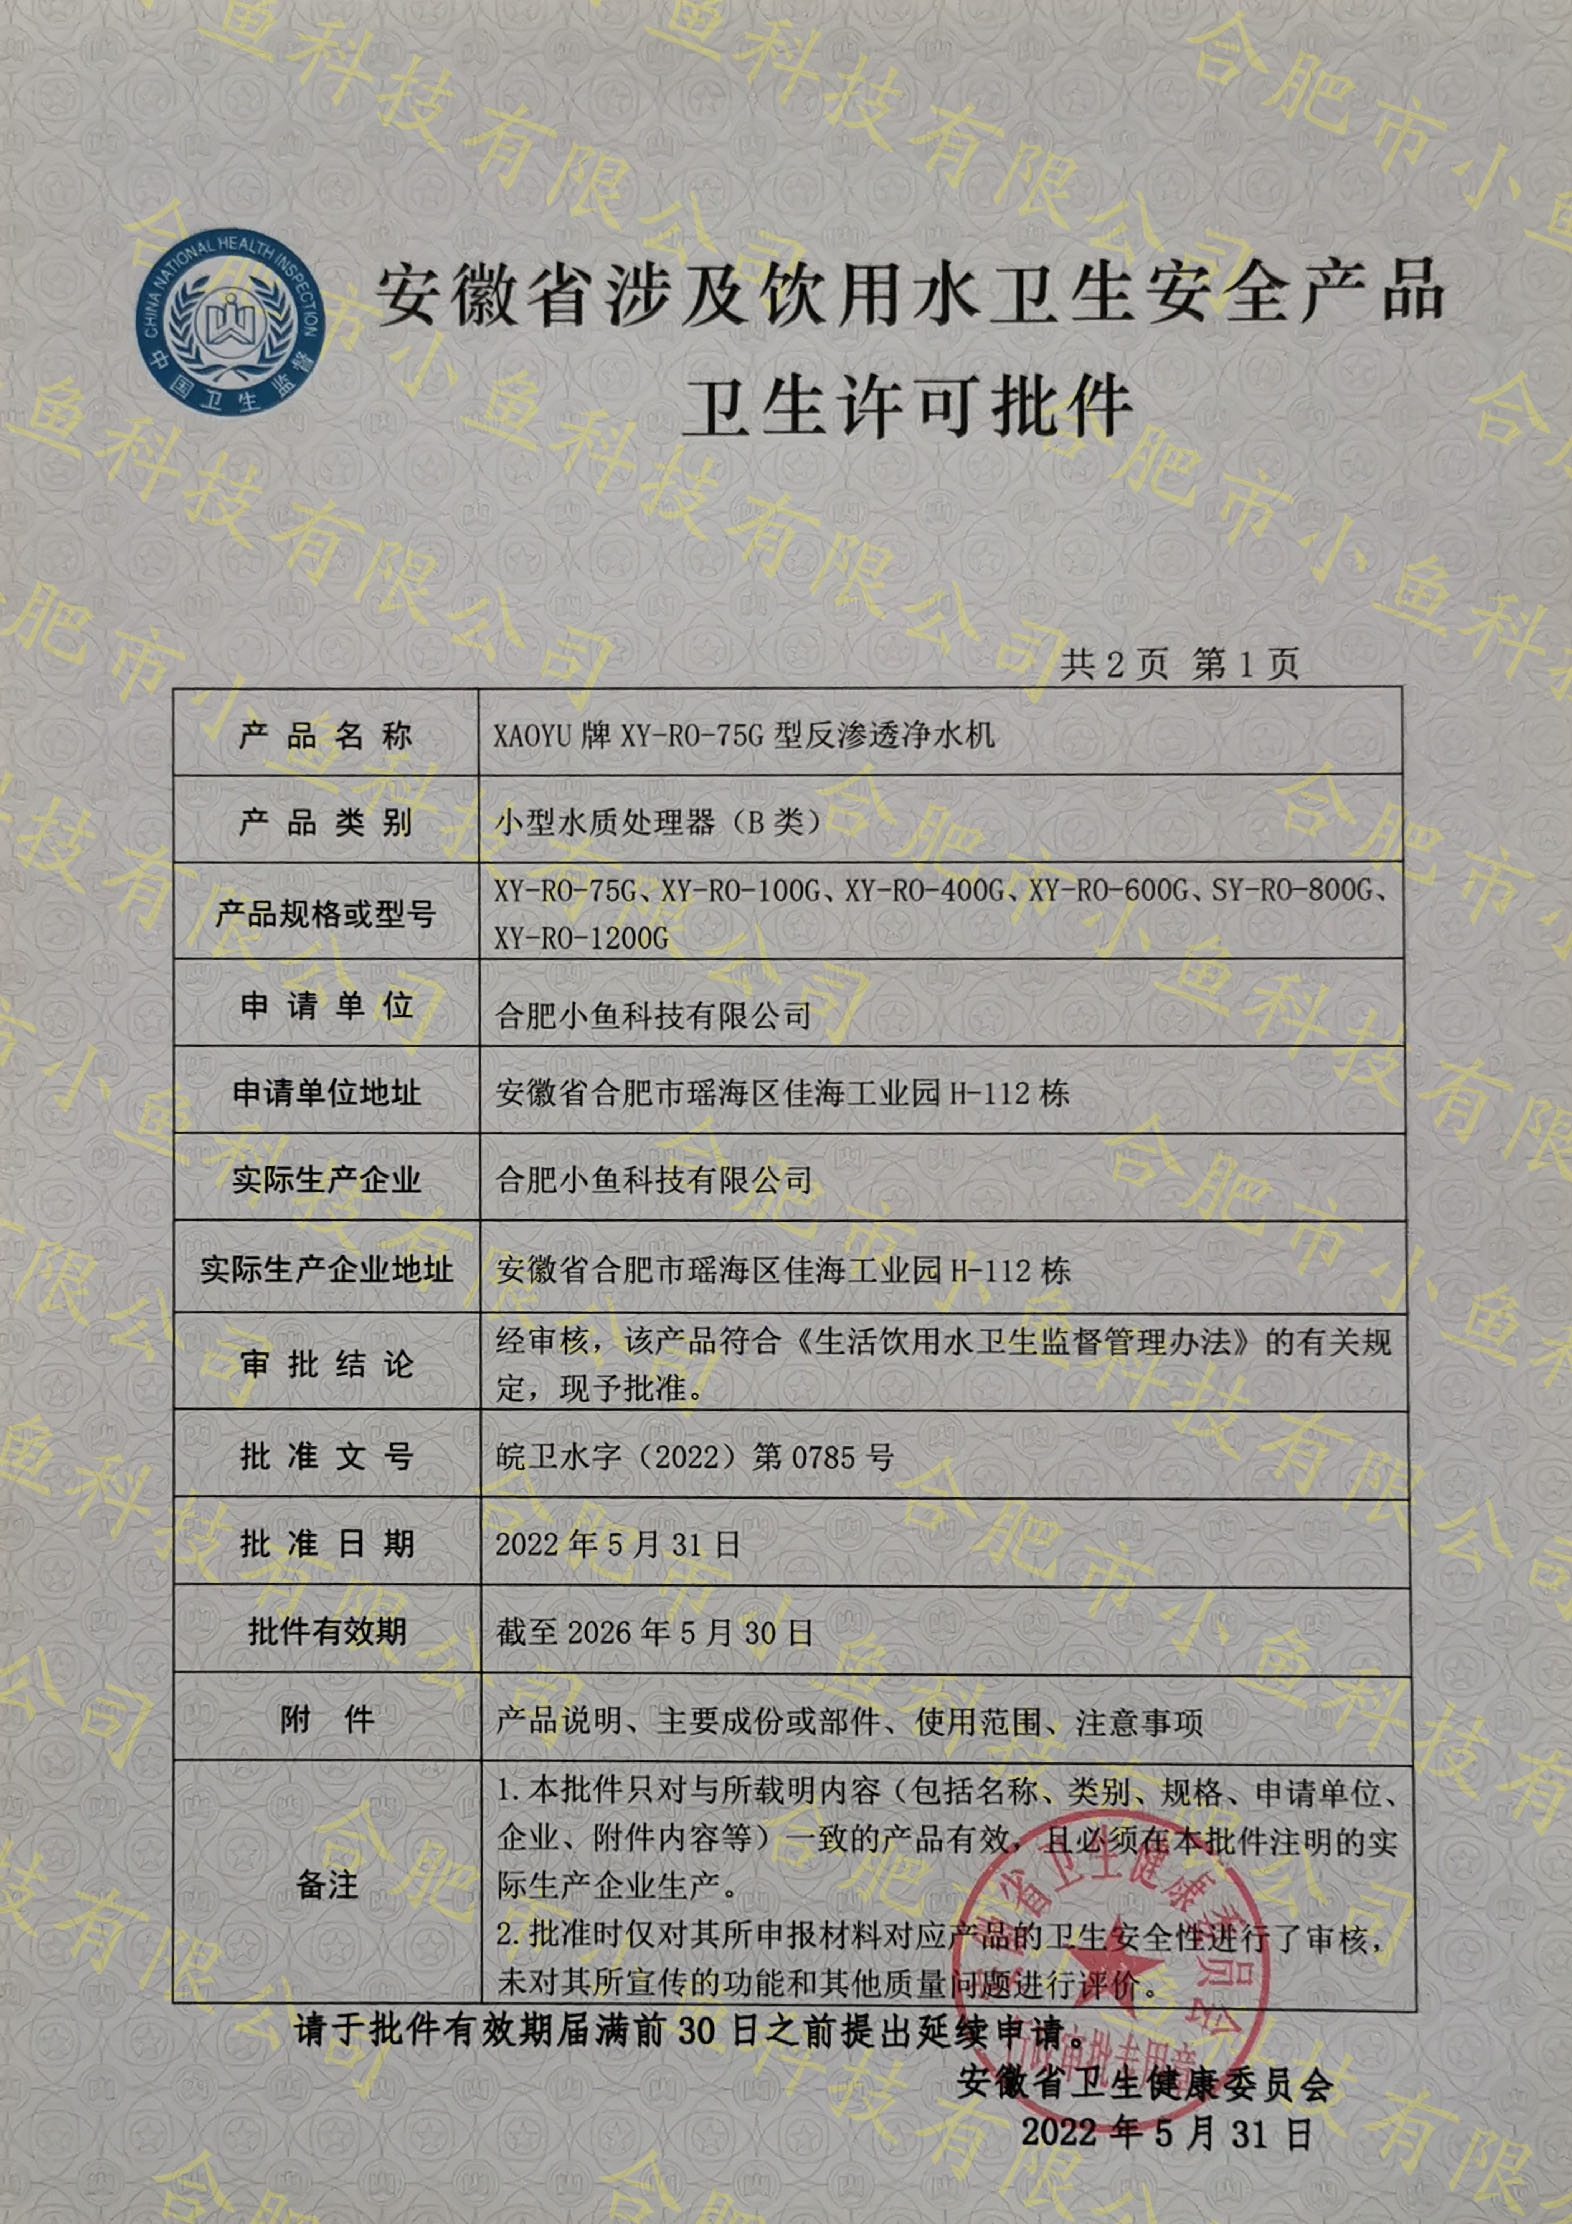 安徽省涉及饮用水卫生安全产品卫生许可批件